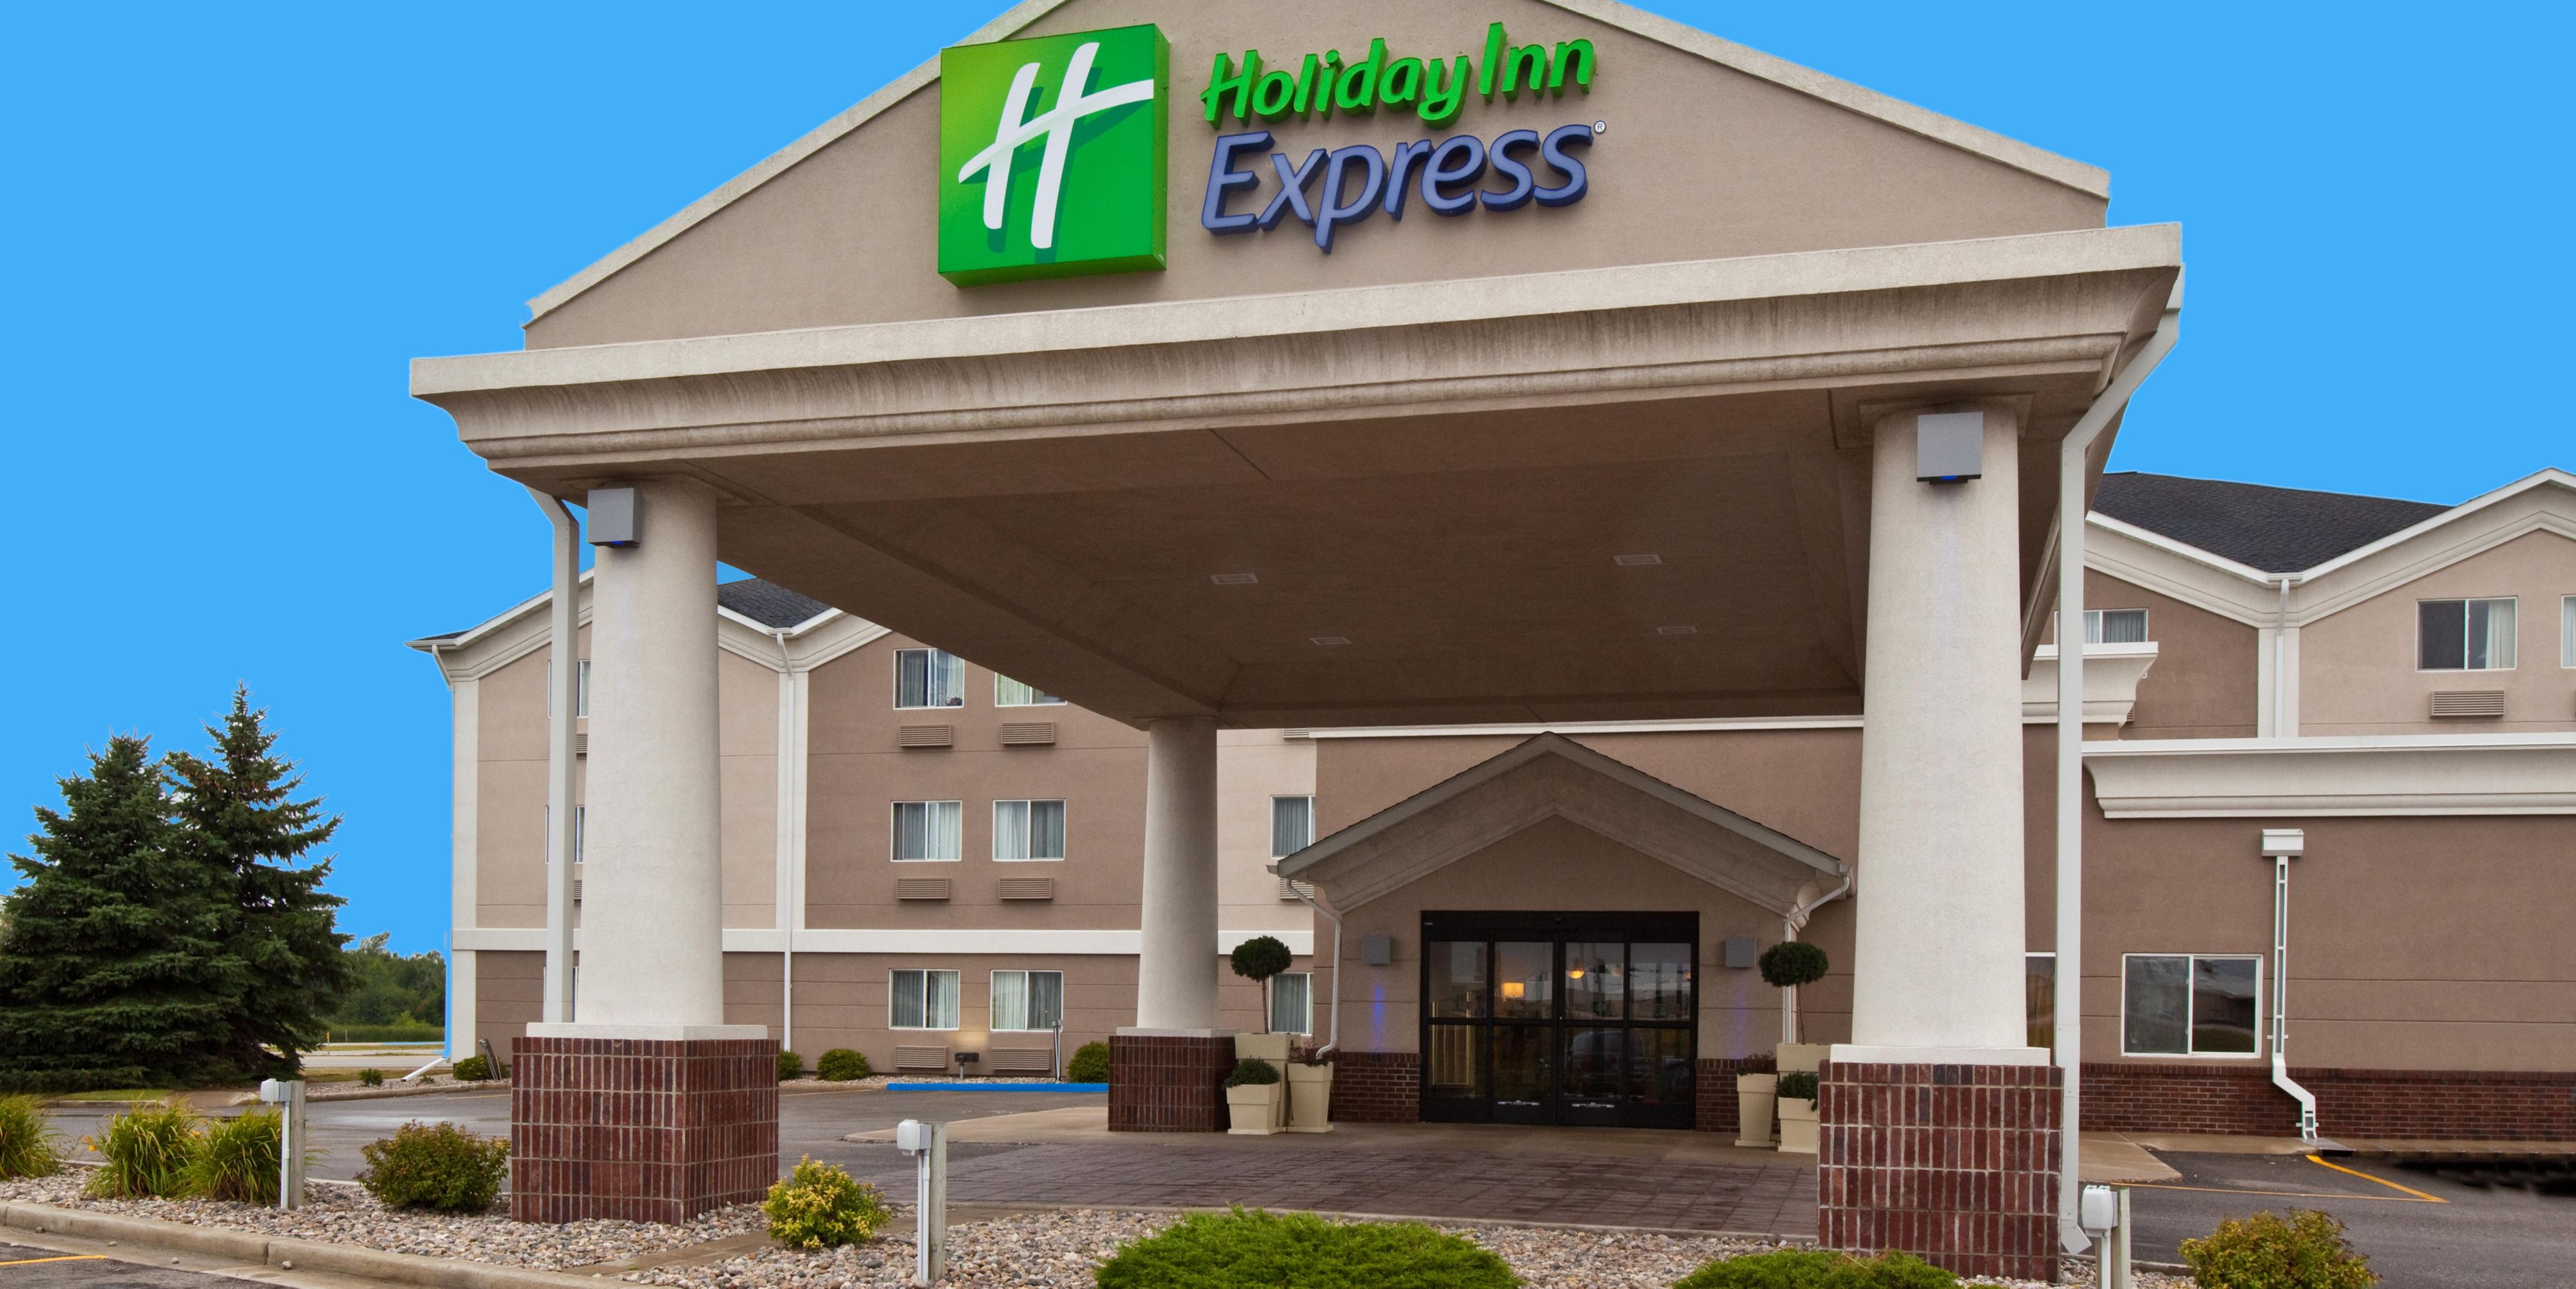 Holiday Inn Express Jamestown 4276042051 2x1